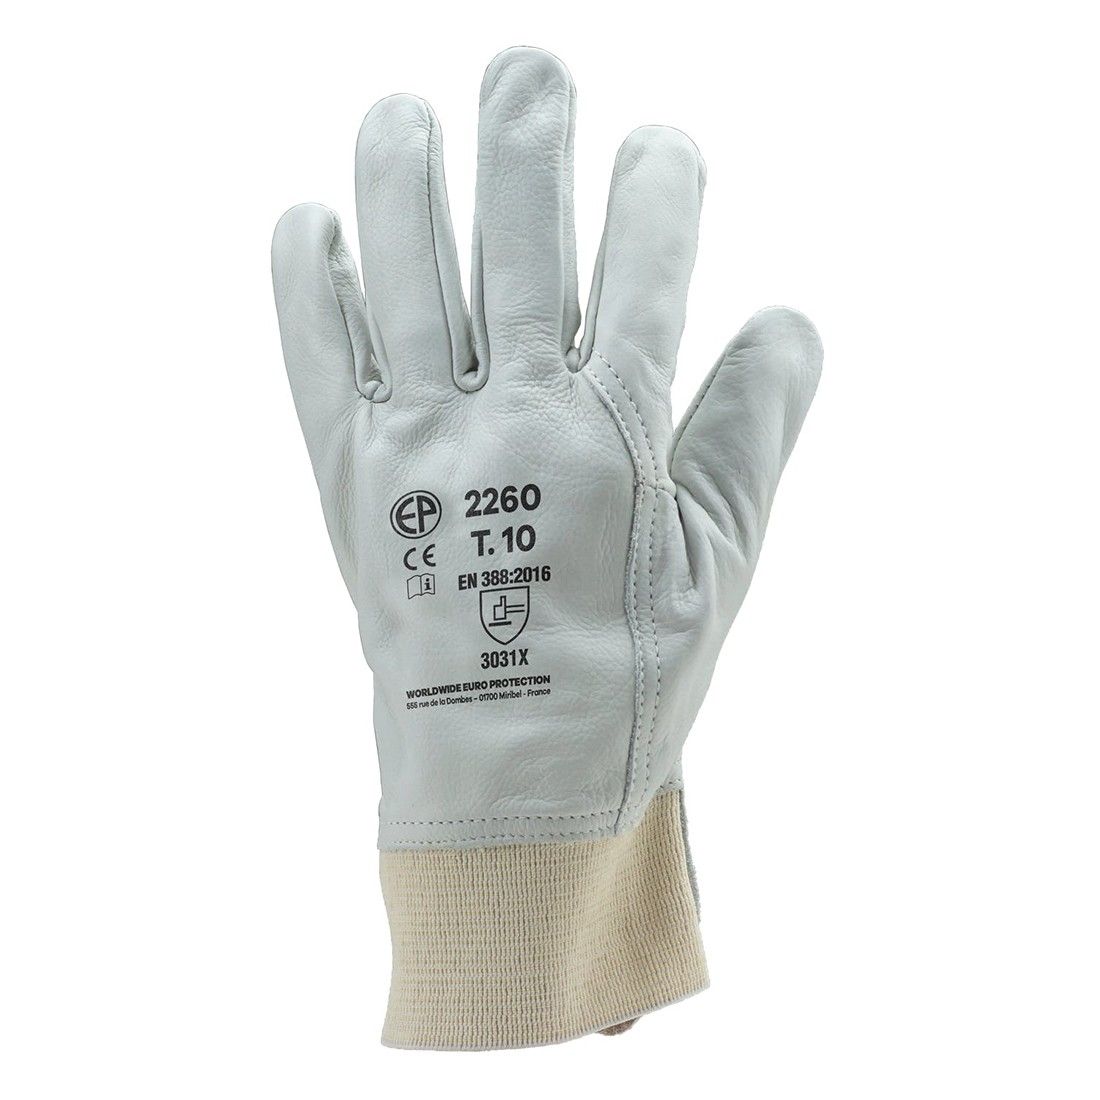 Coverguard - Sur gants électricien hydrofuge jaune beige manchette 15cm  EUROHEAT 2550 (Pack de 12)